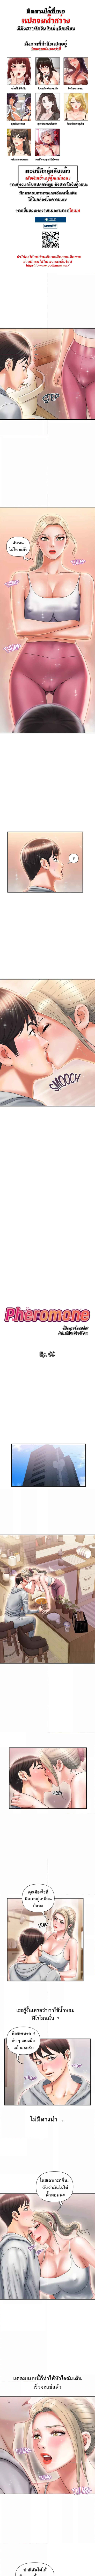 Pheromones 9 (1)